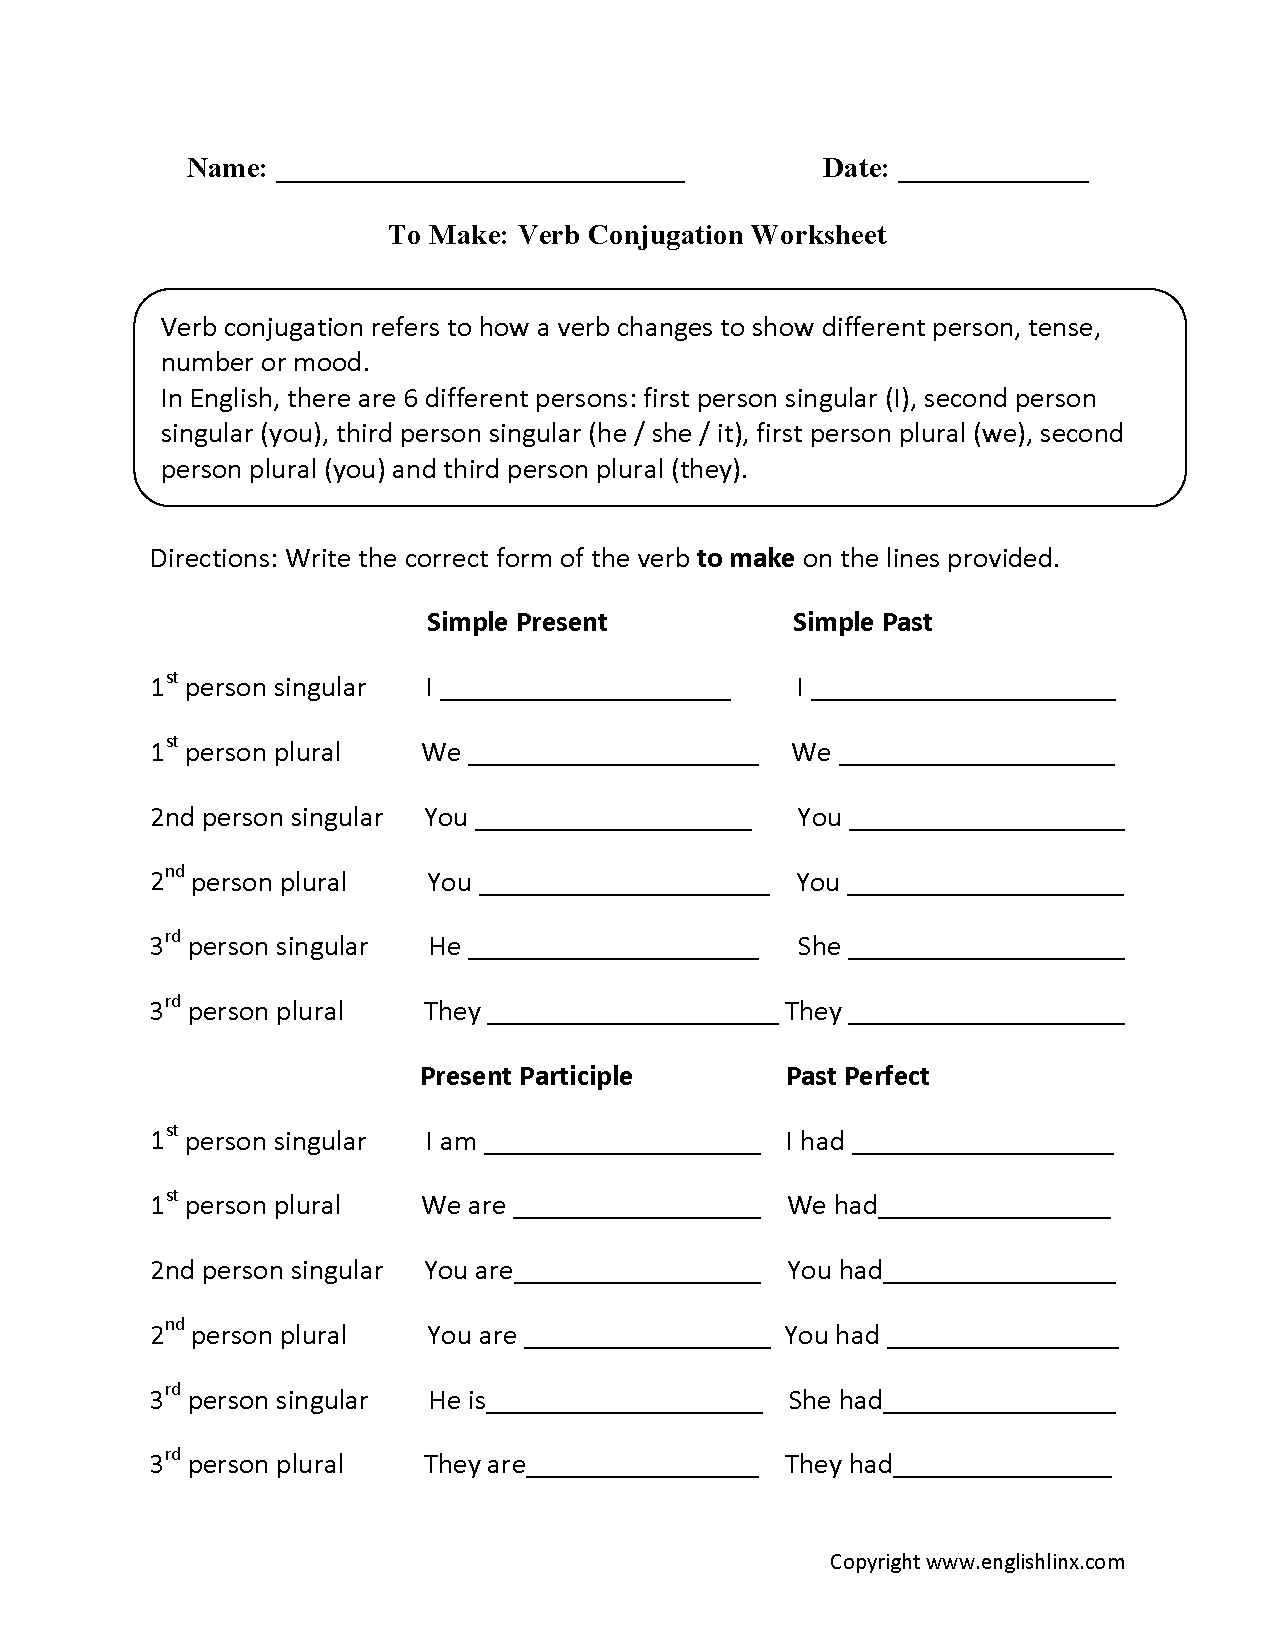 To Make Verb Conjugation Worksheets